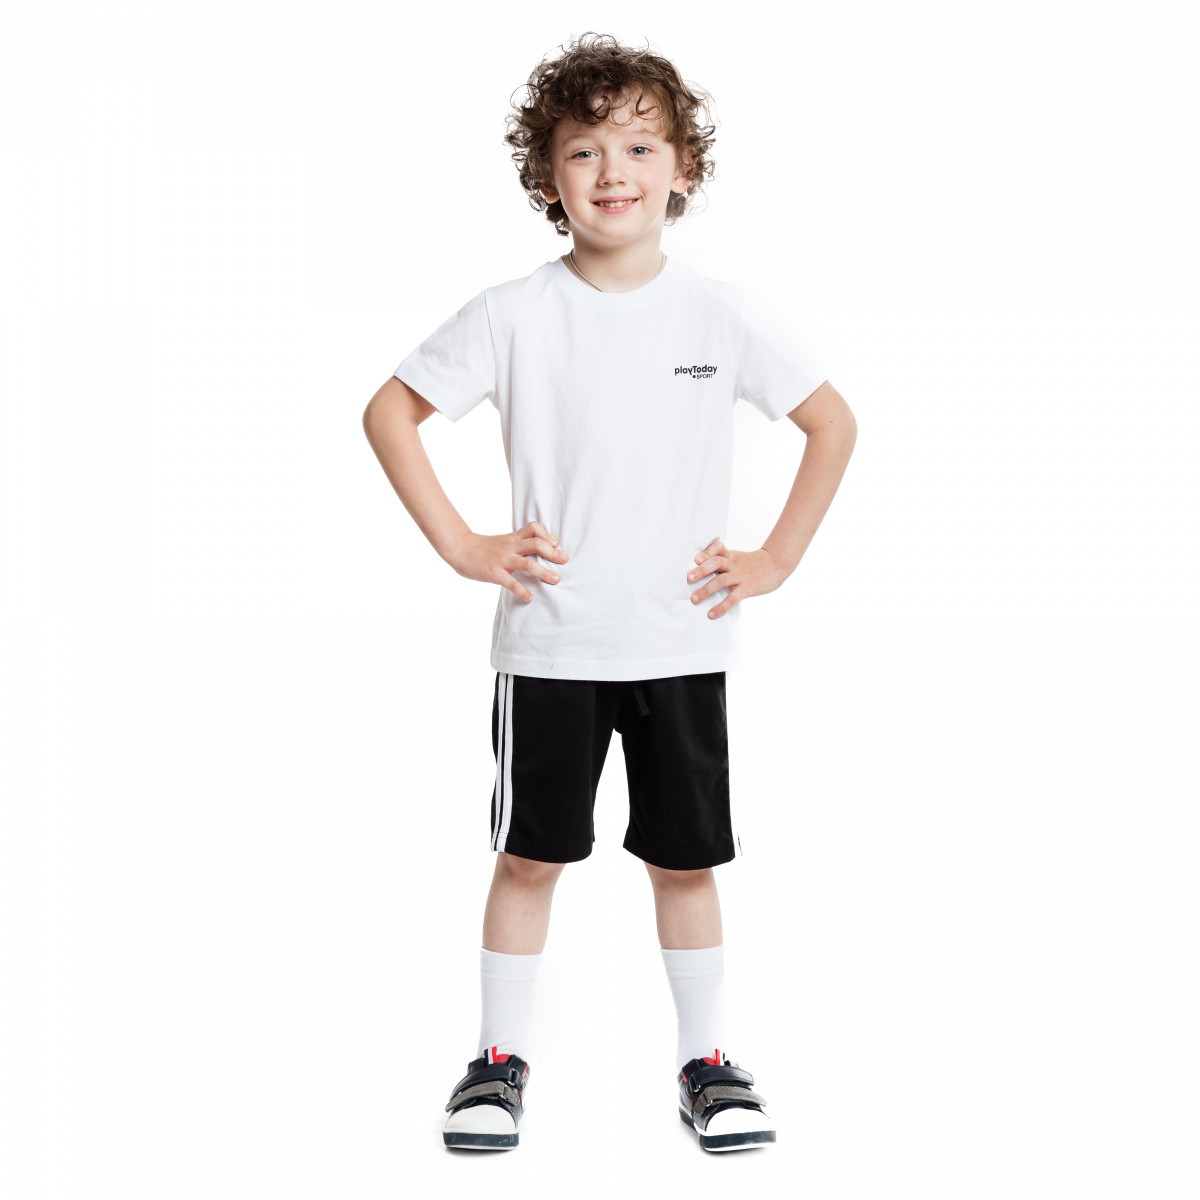 Форма шорты и футболка. Спортивная форма белая футболка и черные шорты. Спортивные шорты для мальчика. Мальчик в физкультурной форме. Белая футболка и черные шорты.